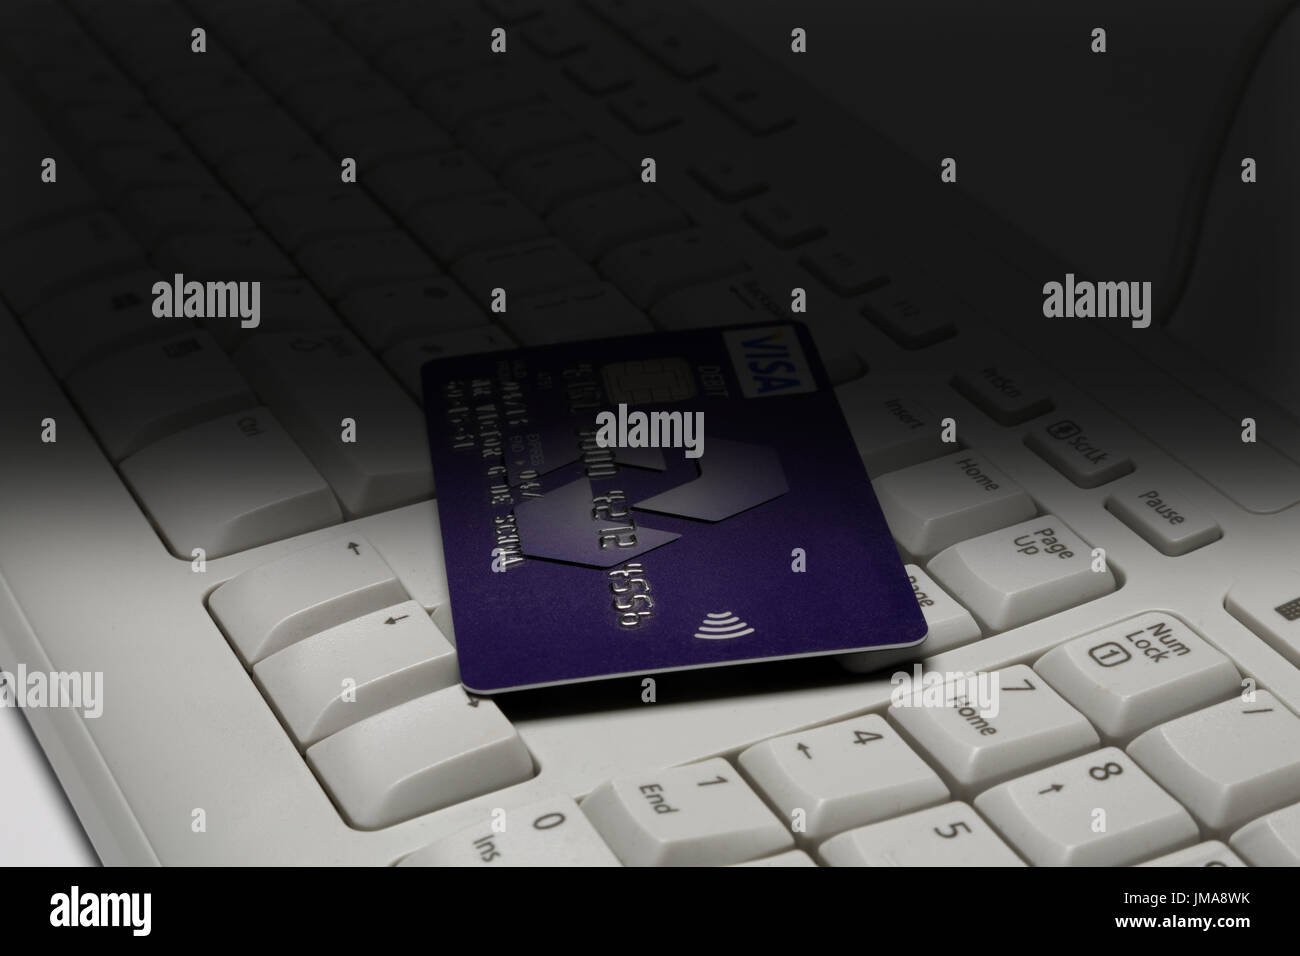 Debit card on keyboard. Stock Photo